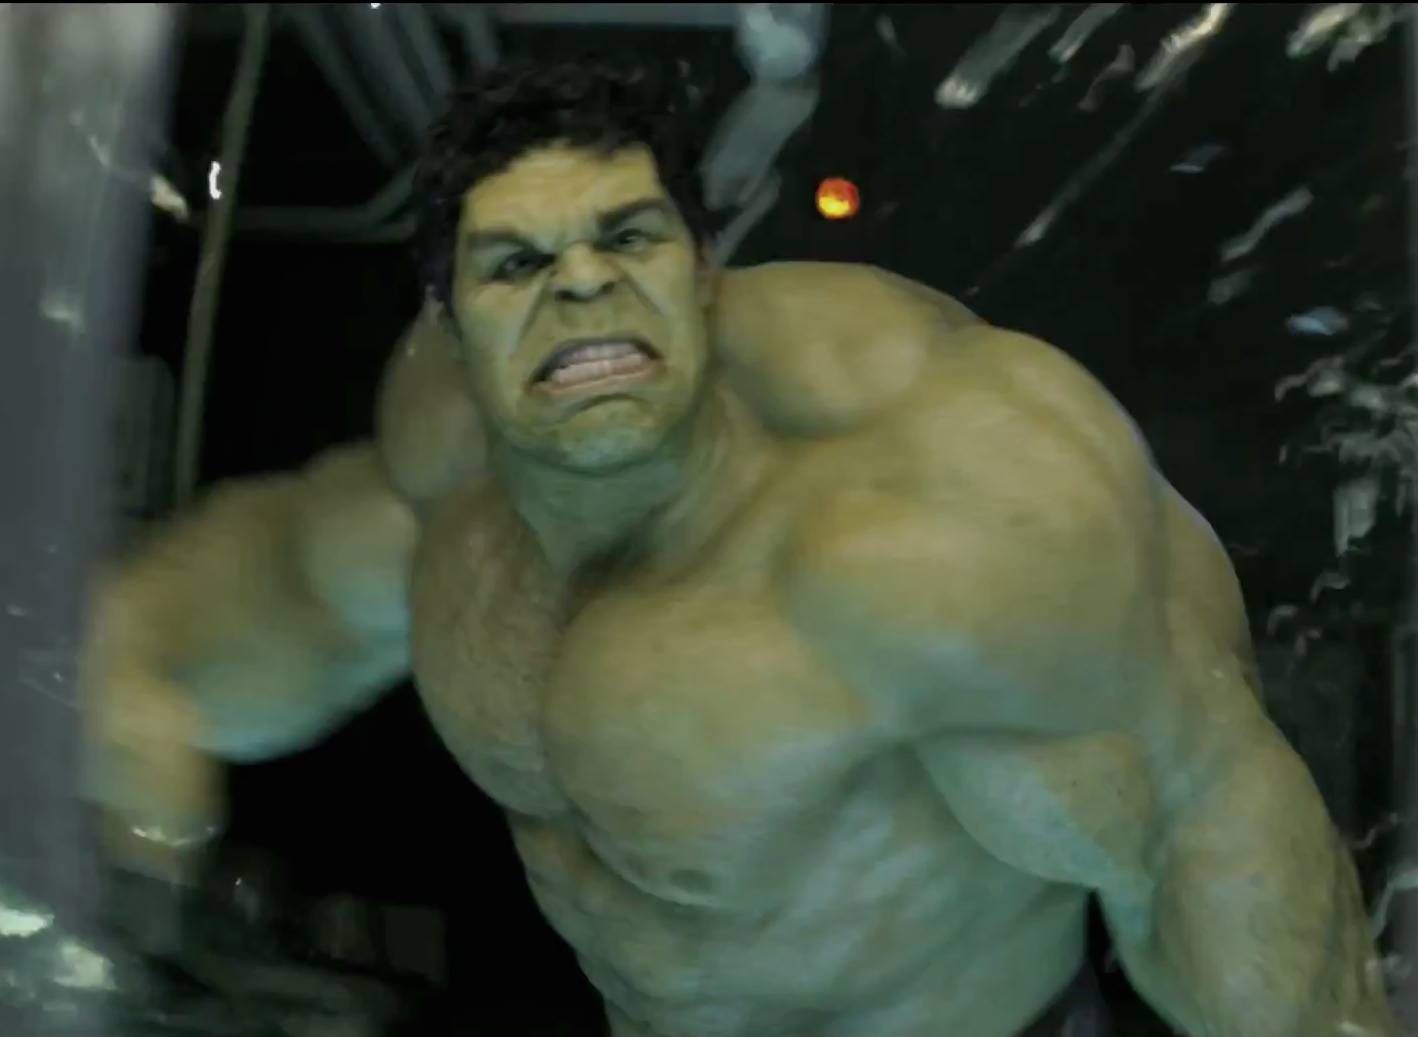 The Hulk Avengers Wallpaper